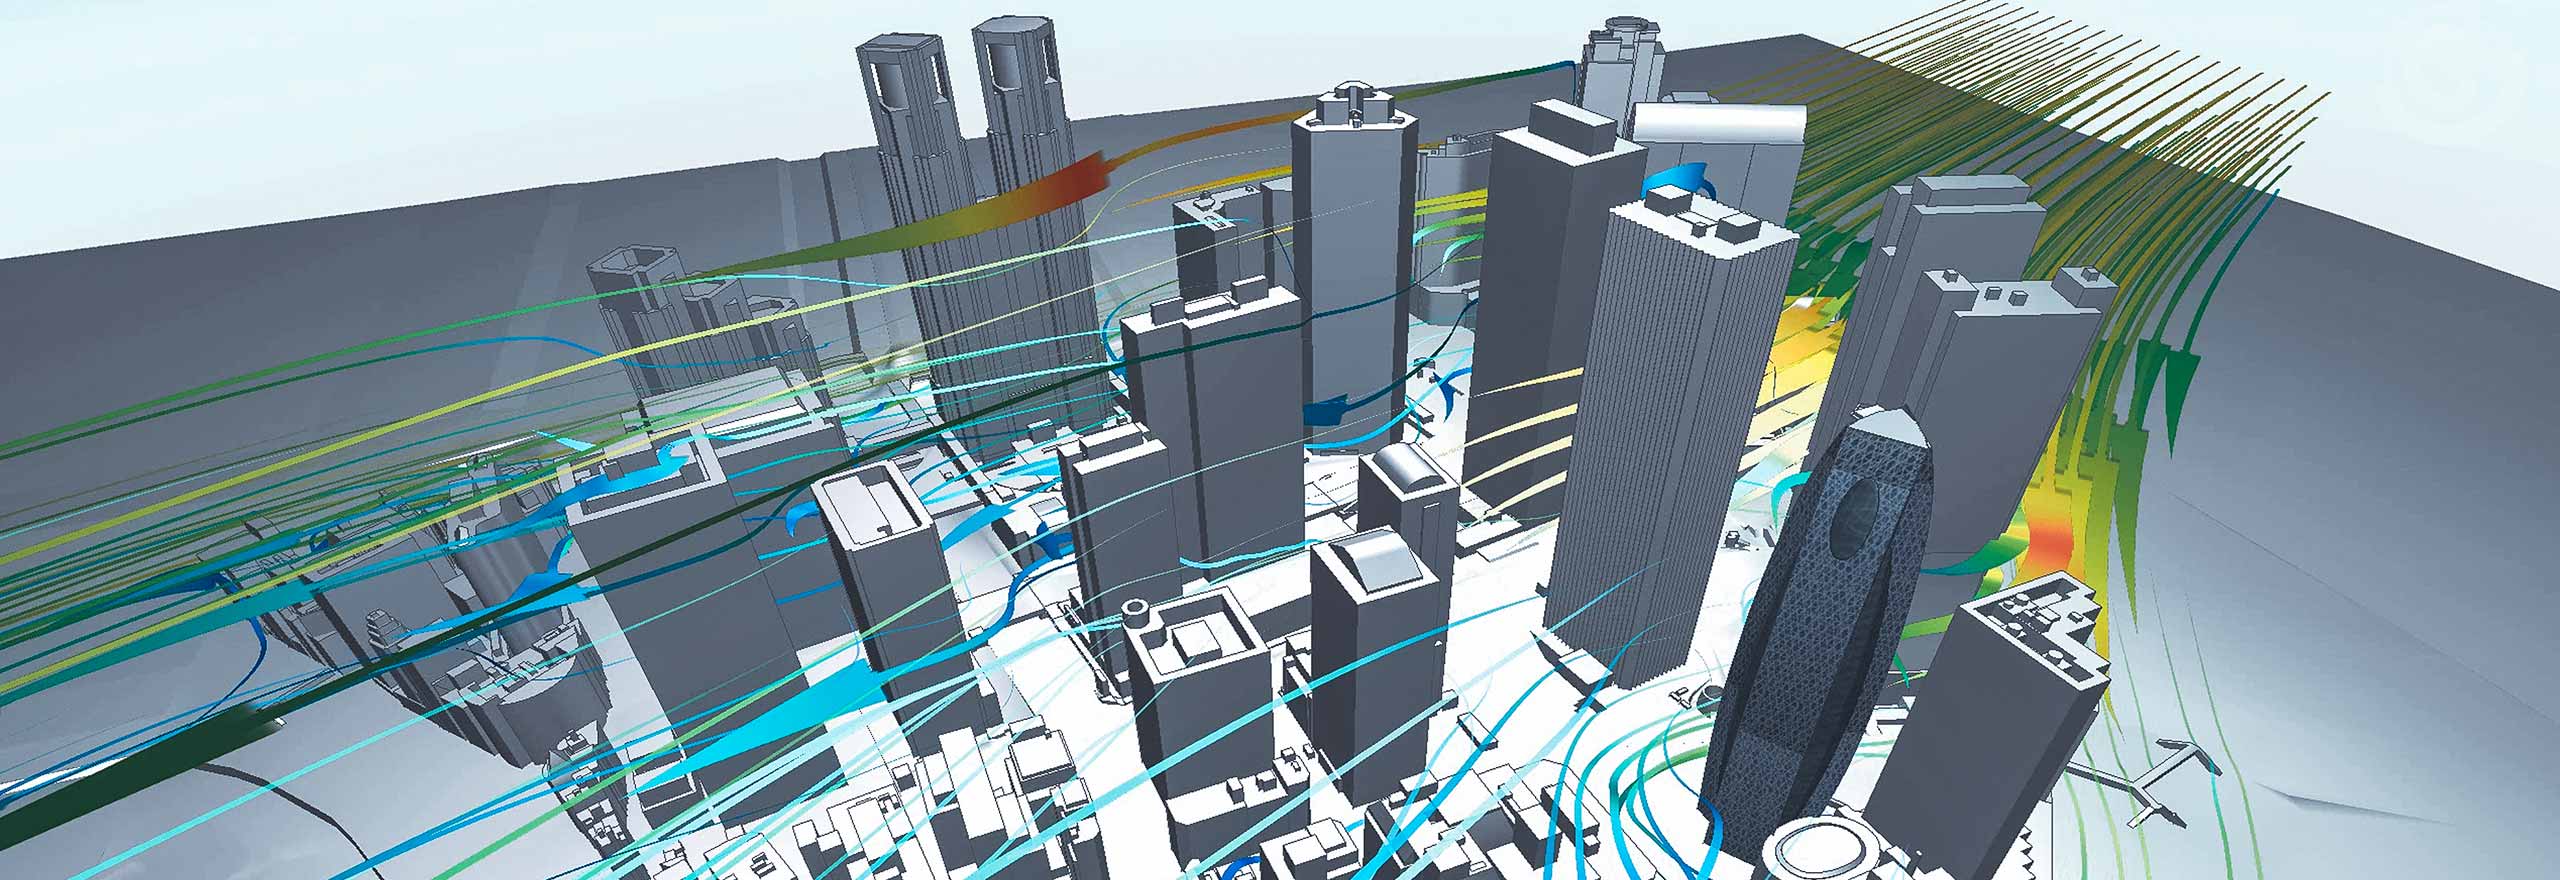 Visualización de la circulación del aire alrededor de los edificios mediante el software de simulación multifísica CFD